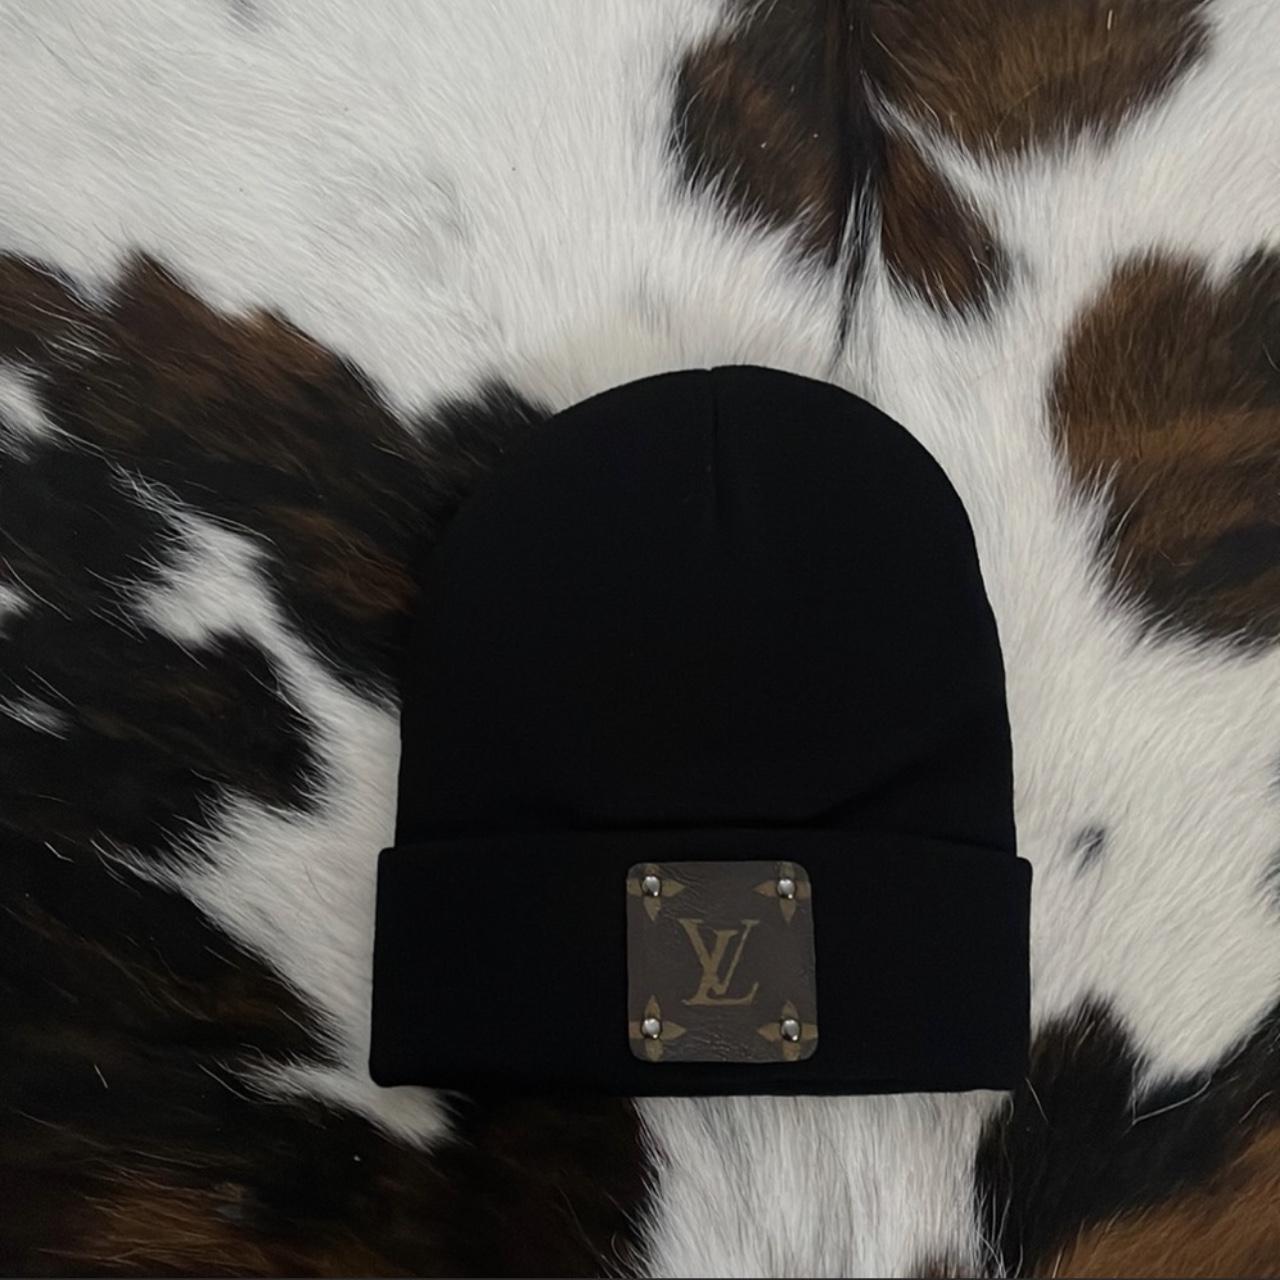 Louis Vuitton Beanie Black One Size Gently Worn - Depop